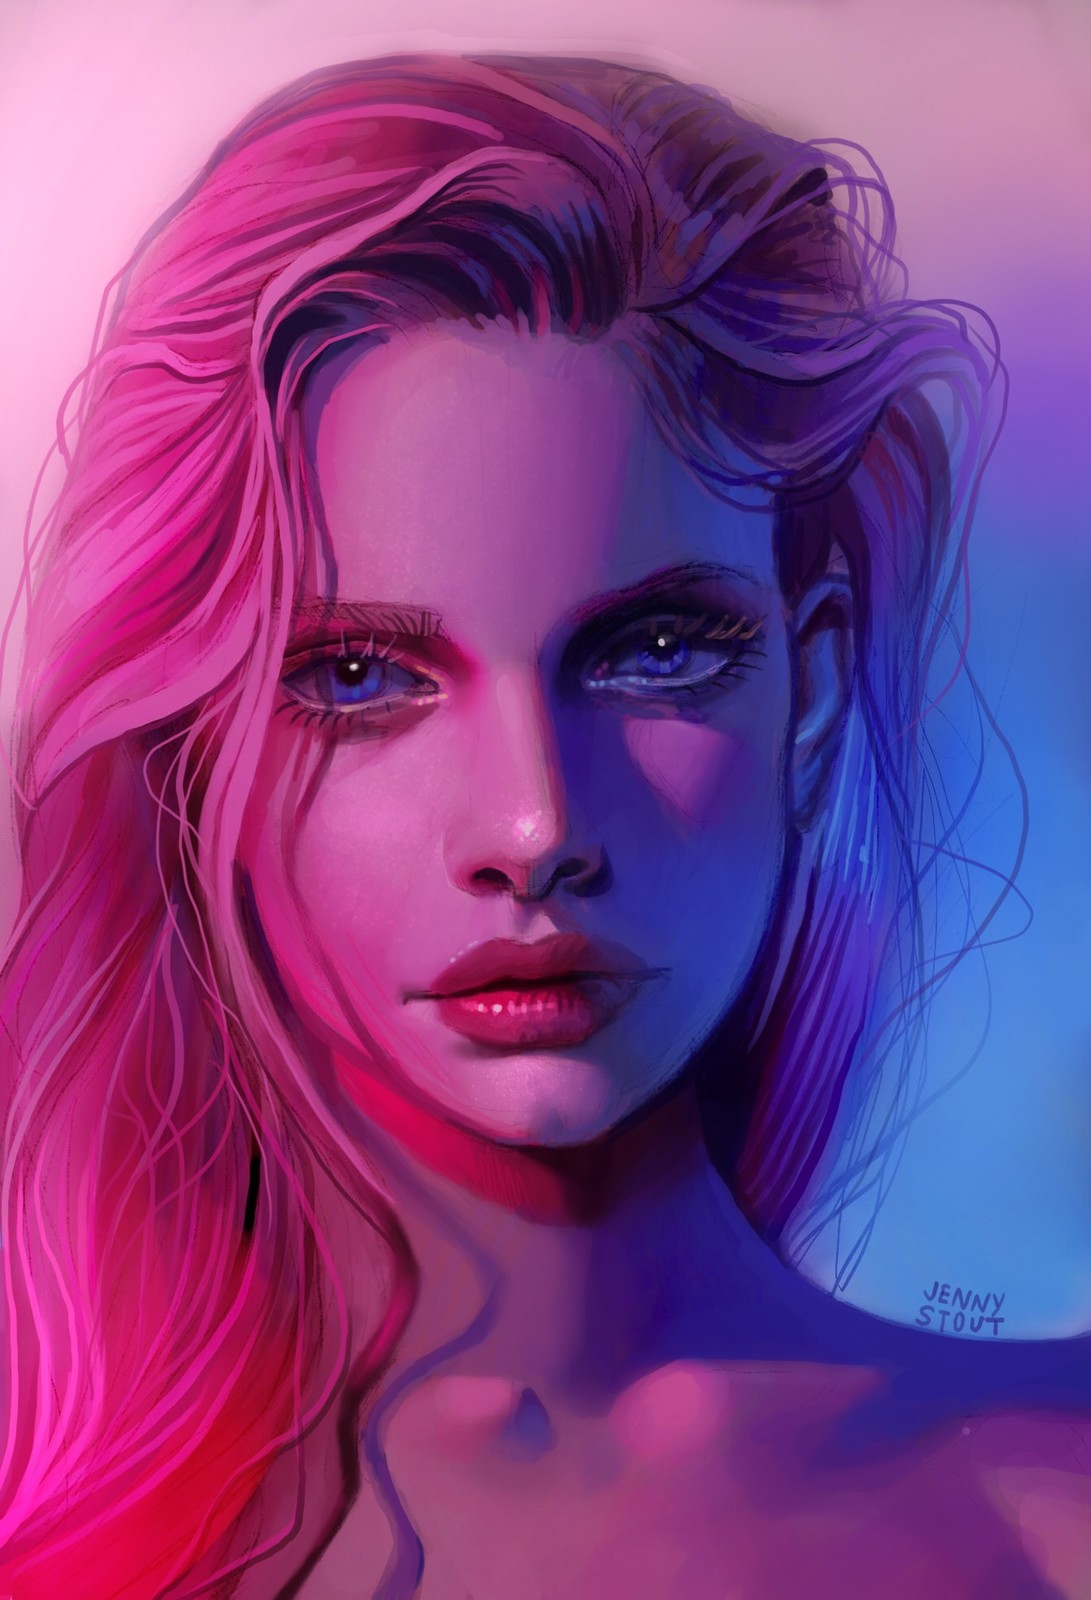 Jenny Stout - Pink/Blue